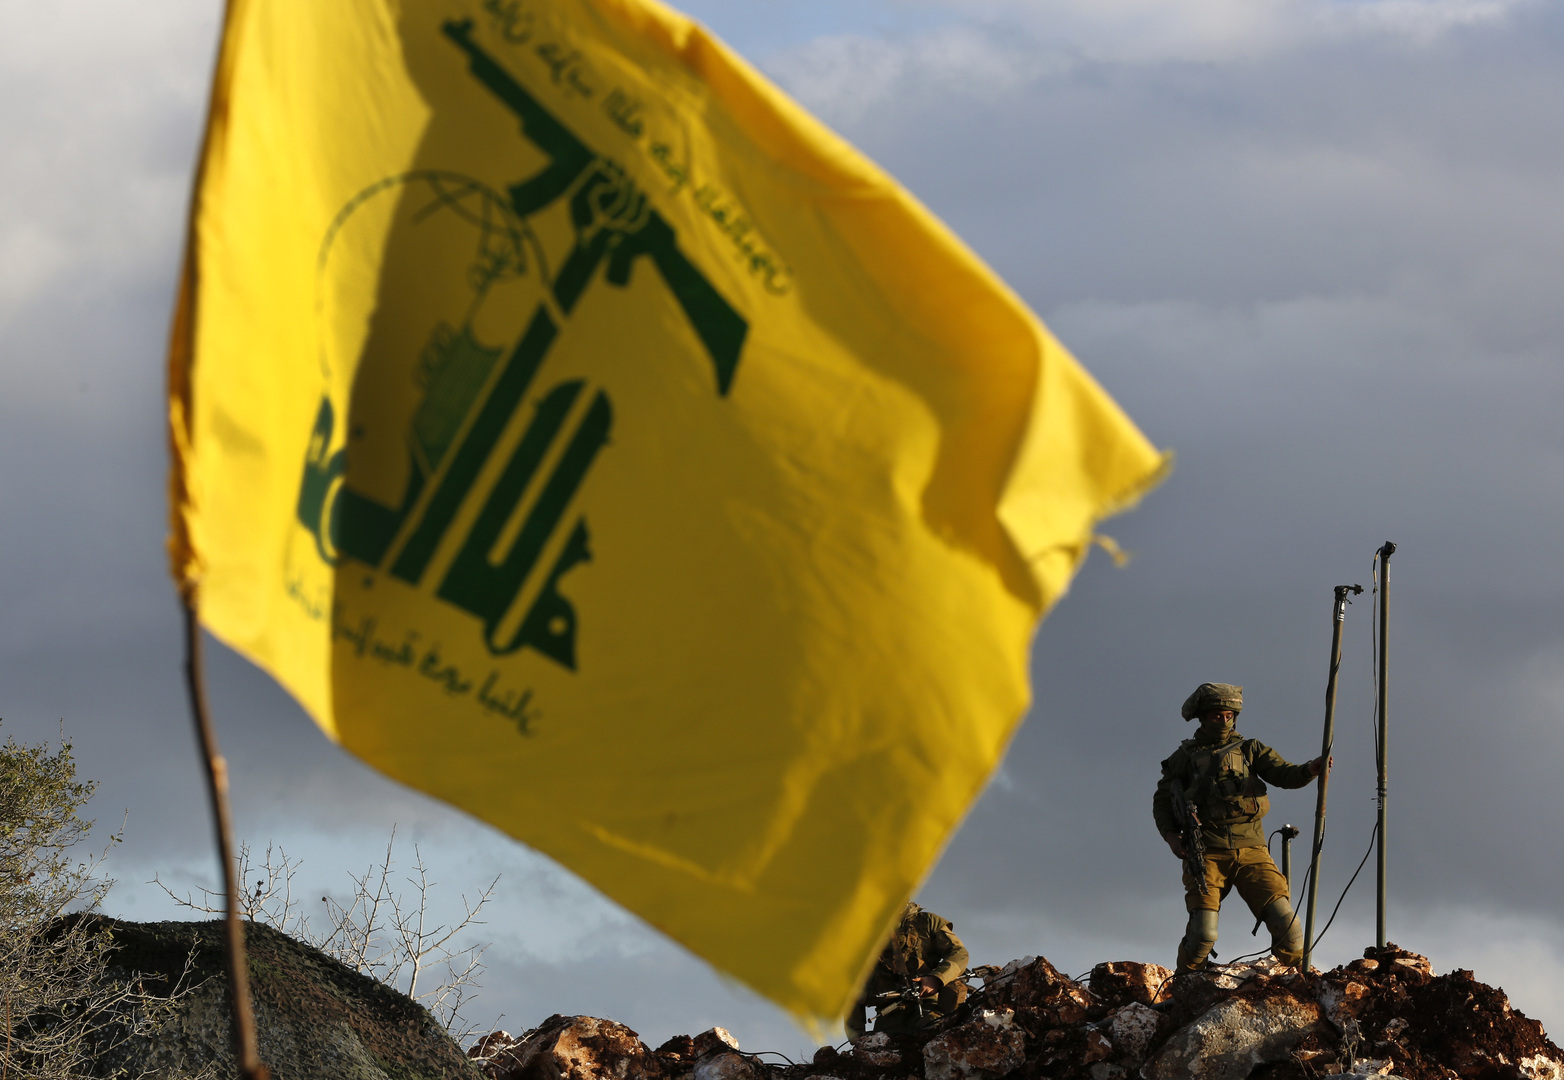 بعد تقرير عن رد حزب الله.. مصادر لـRT: فرنسا تسلم لبنان مقترحا معدلا للتوصل لوقف إطلاق النار بالجنوب